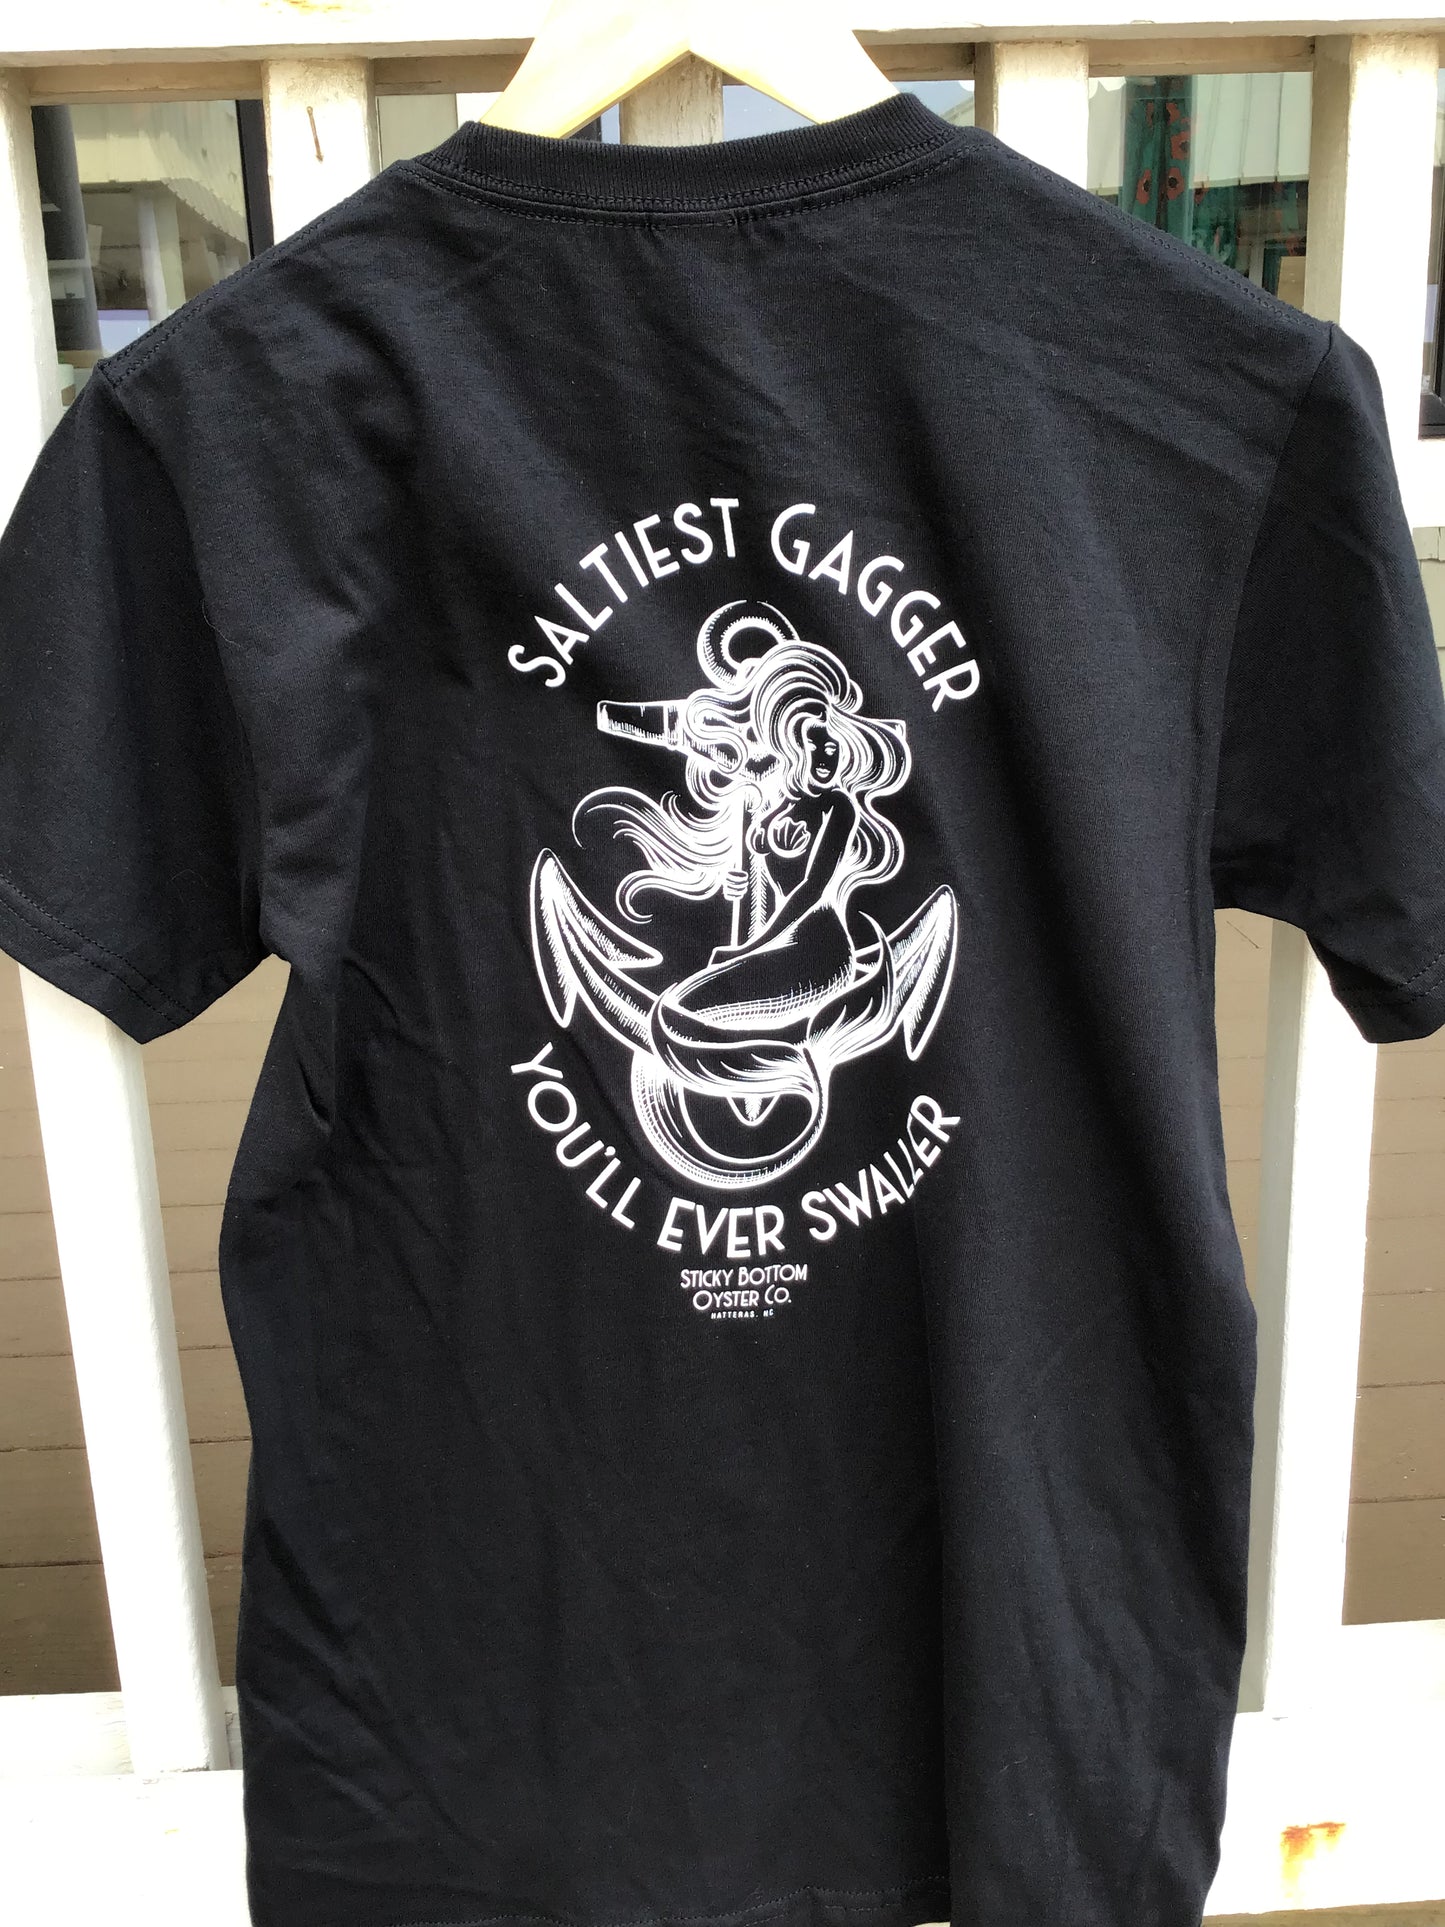 S/S Gagger mermaid T-shirt